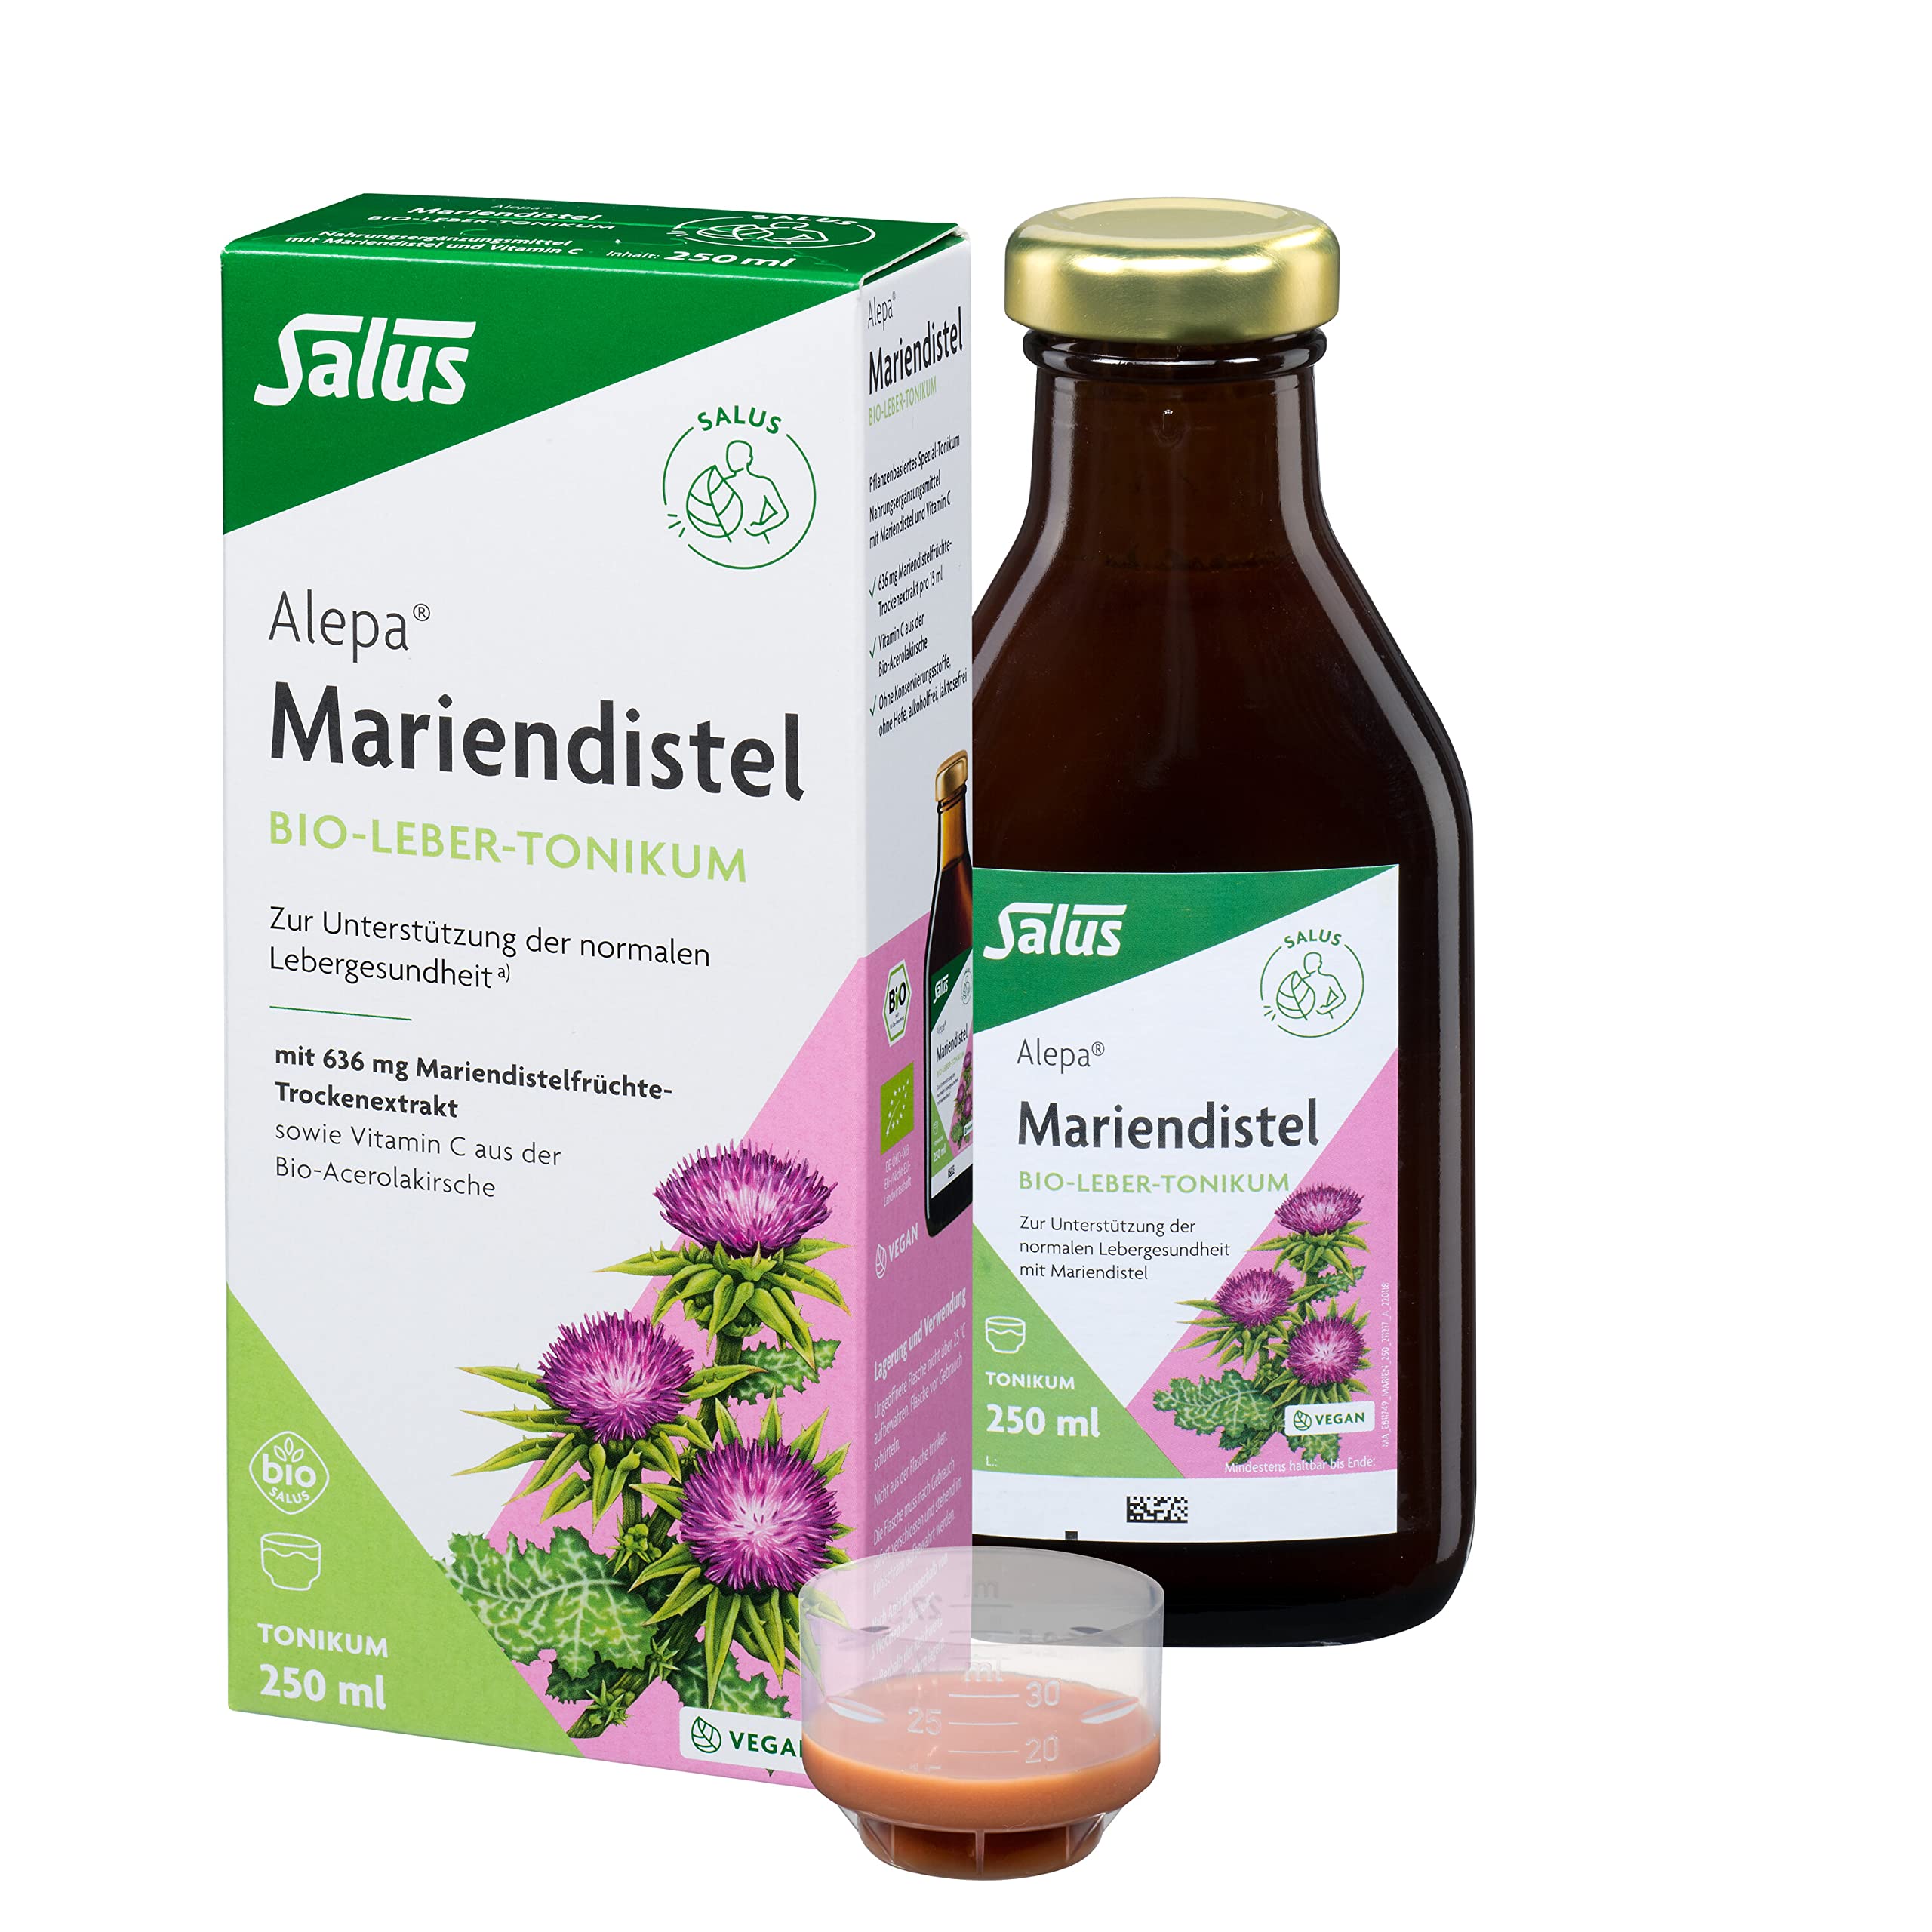 Salus Alepa Mariendistel Bio-Leber-Tonikum – 1x 250 ml - zur Unterstützung der normalen Lebergesundheit mit Mariendistel – mit Vitamin C - vegan - bio